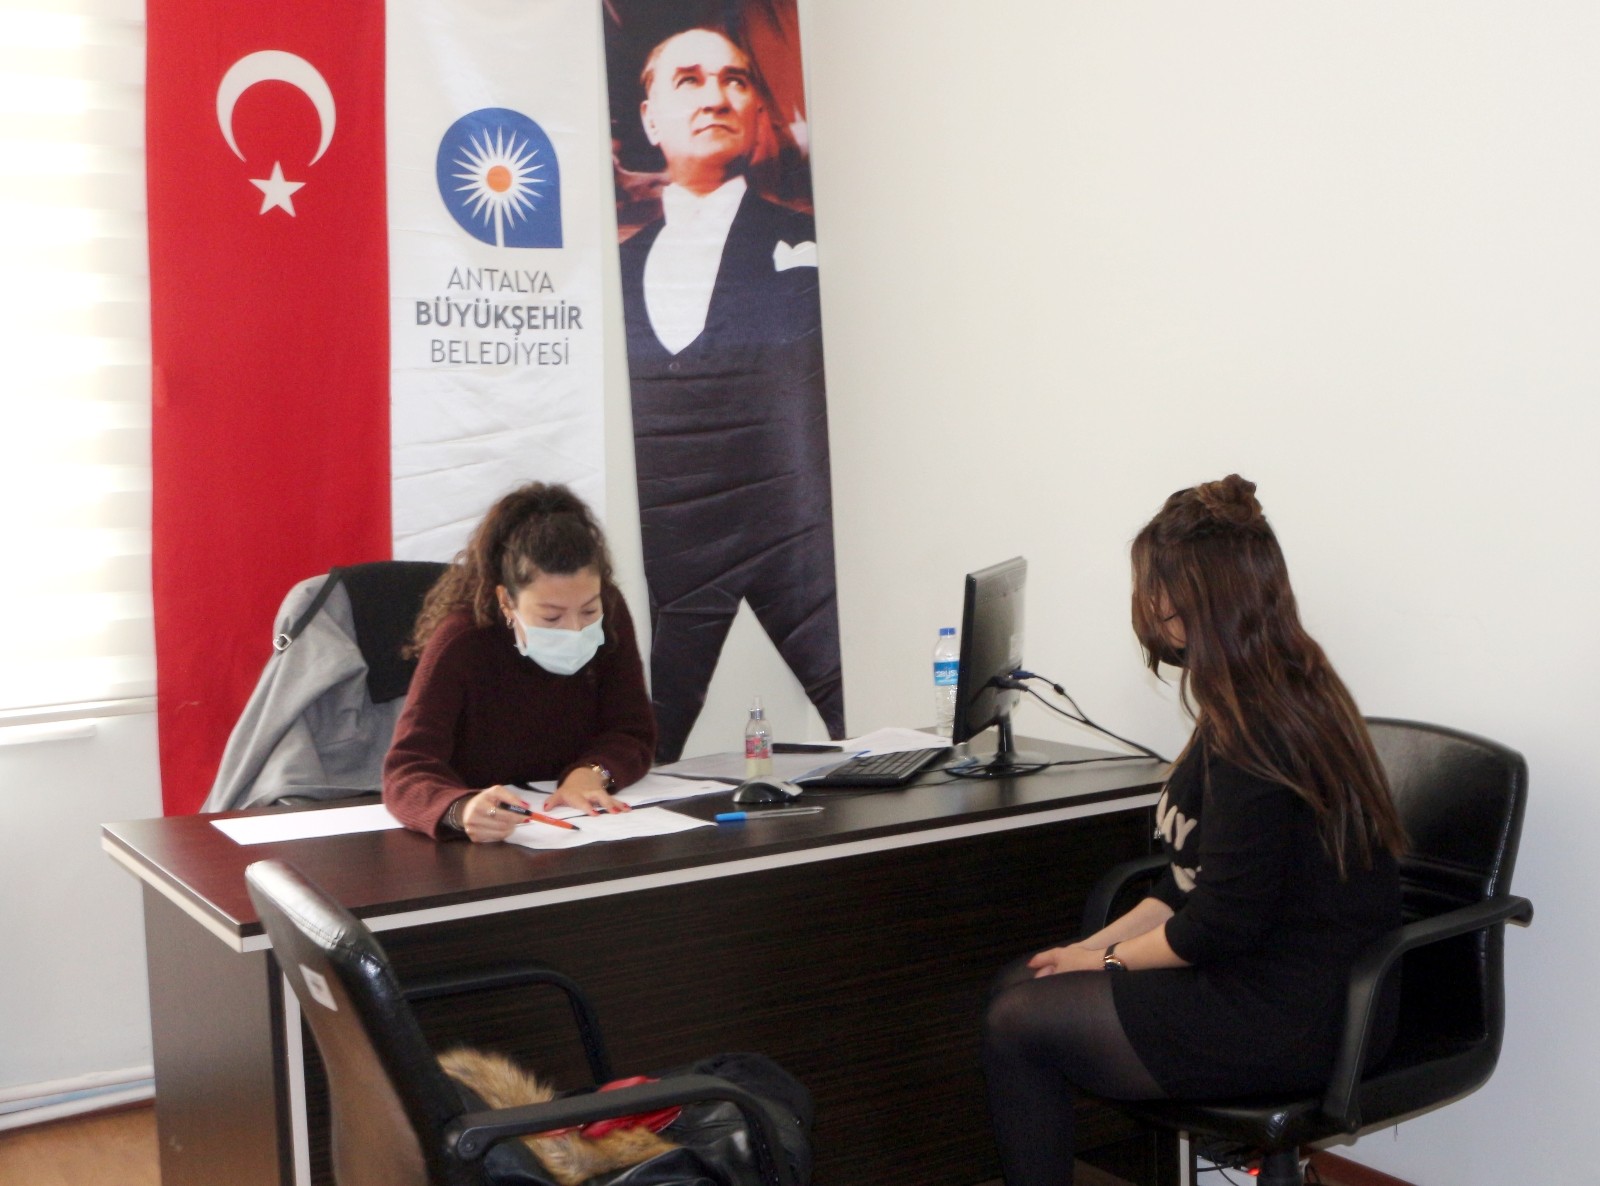 Antalya Büyükşehir Belediyesi Sosyal hizmetler kapsamında Akseki’de psikolog ve diyetisyen danışmanlık hizmeti vermeye başladı.